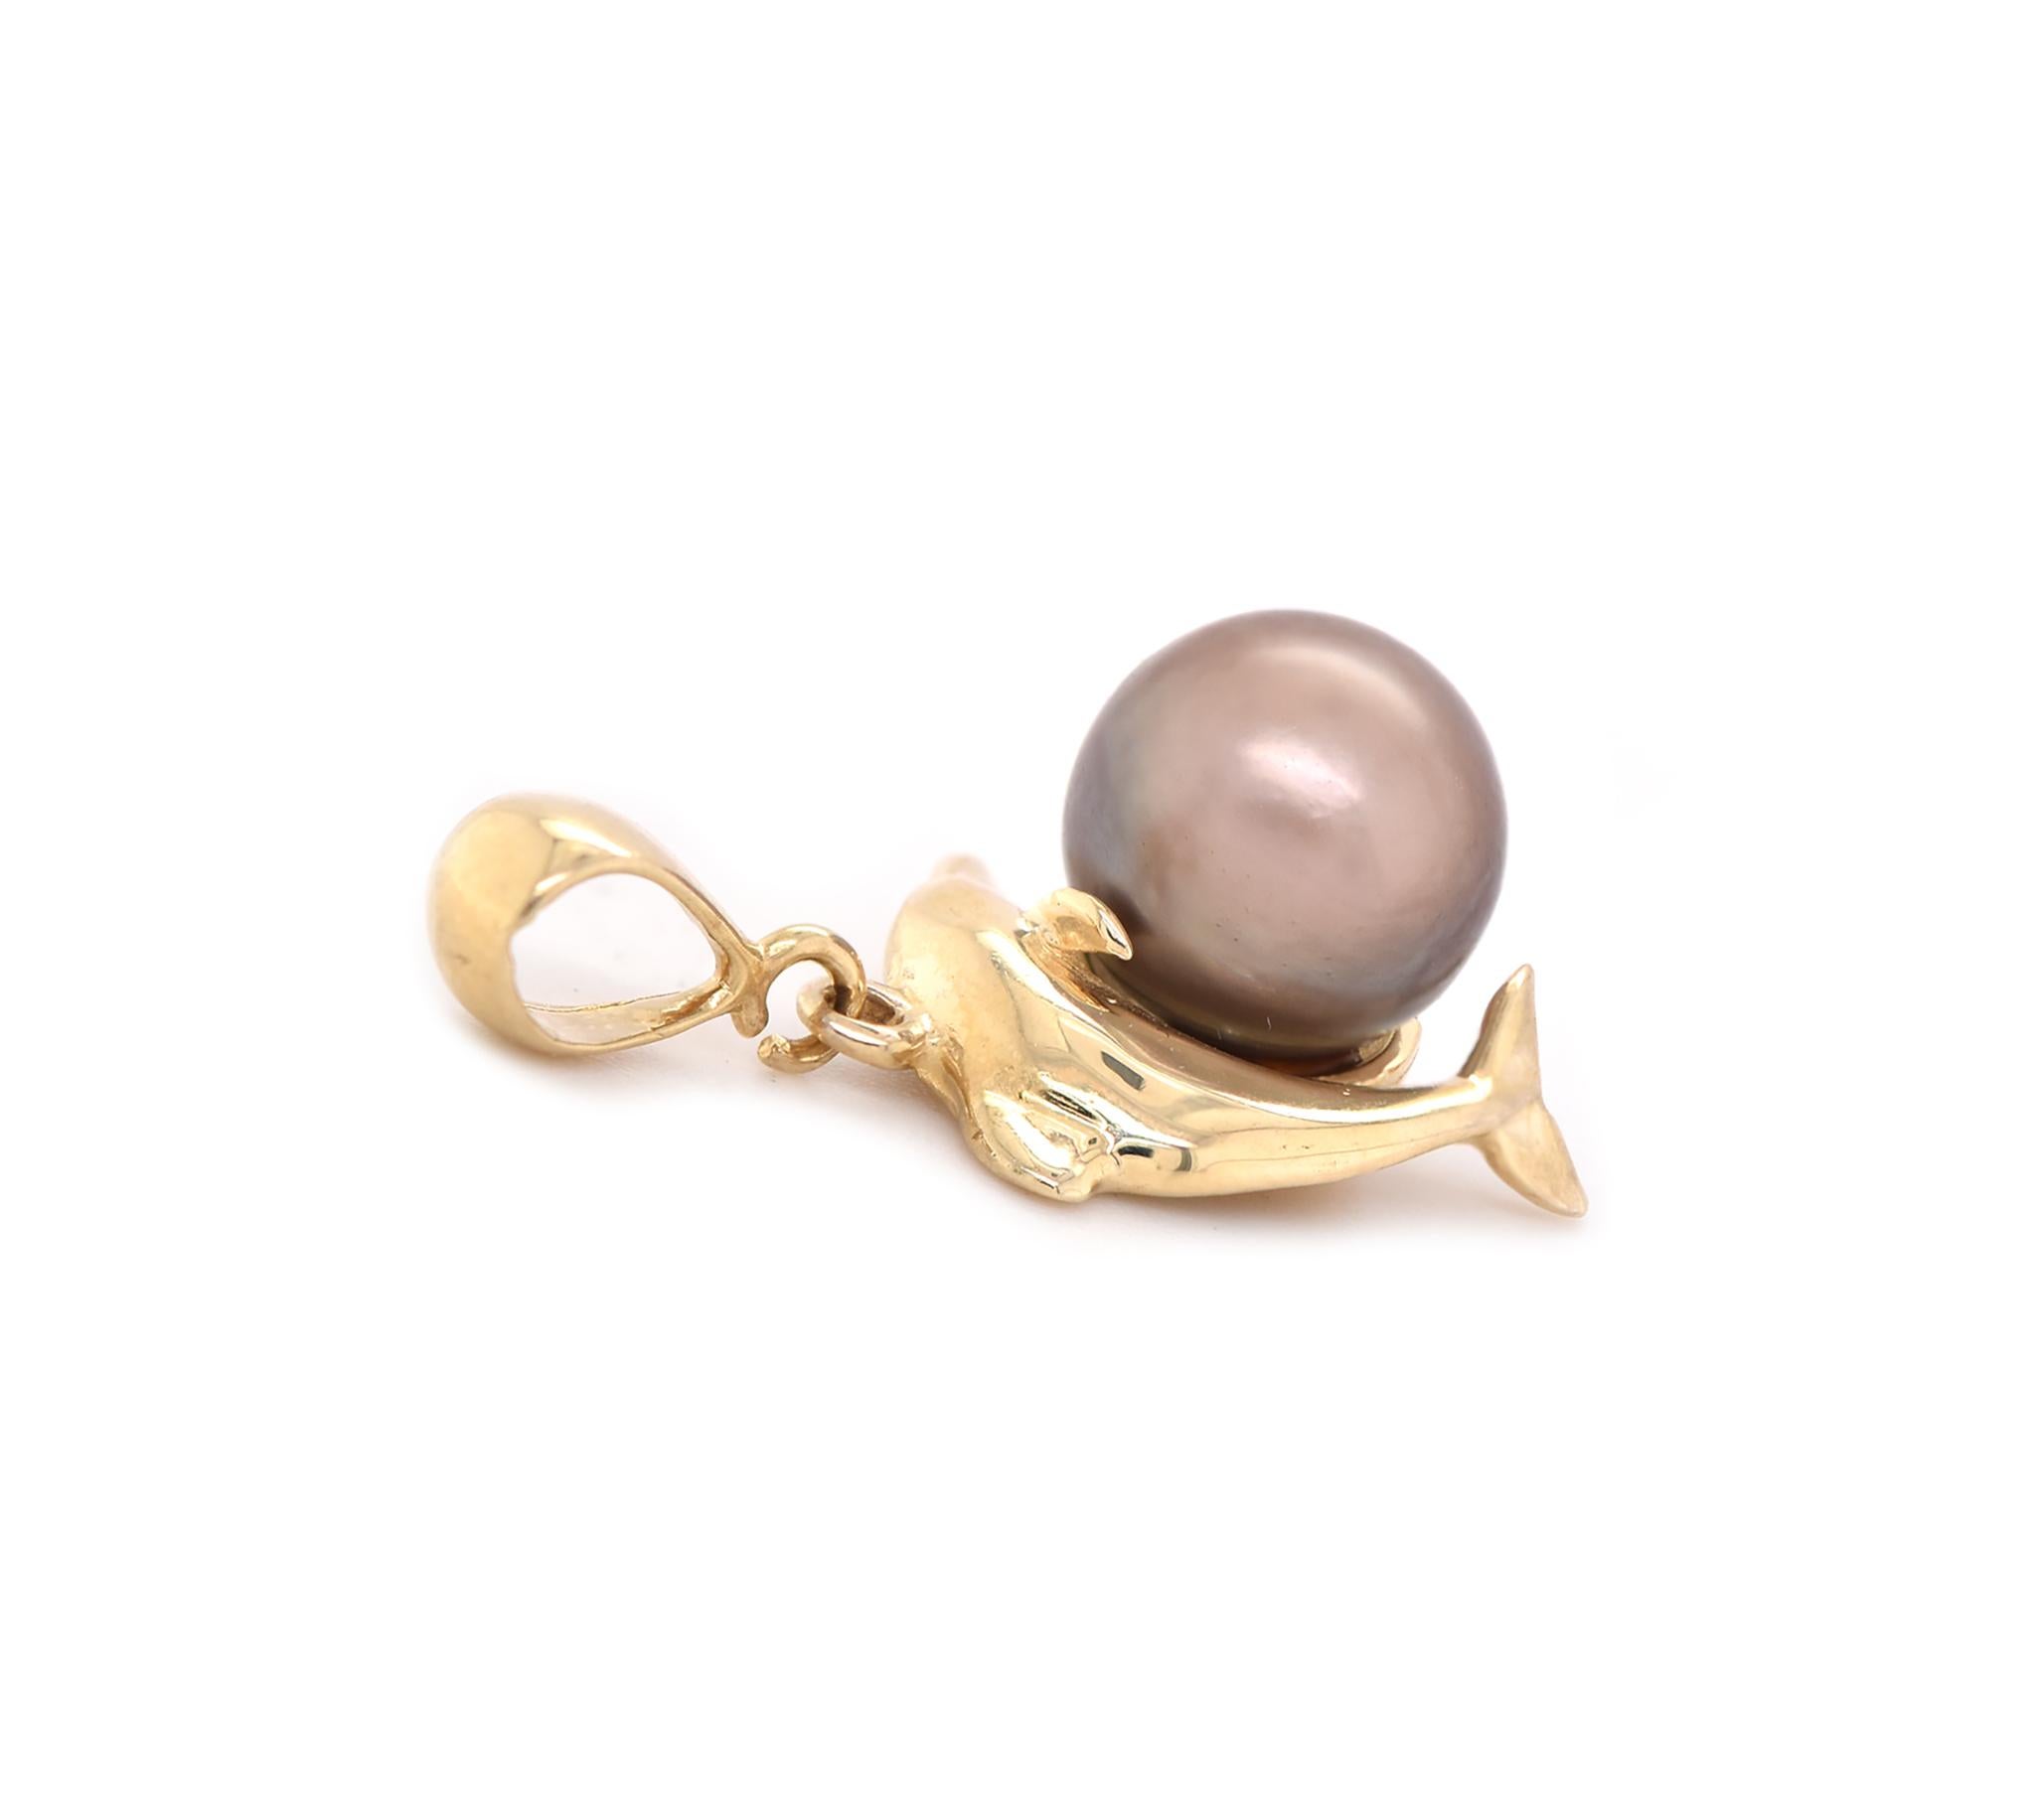 Designer: custom 
Material: 14K yellow gold
Pearl: 1 grey pearl = 9.4mm
Dimensions: pendant measures 25 X12mm
Weight: 3.75 grams
